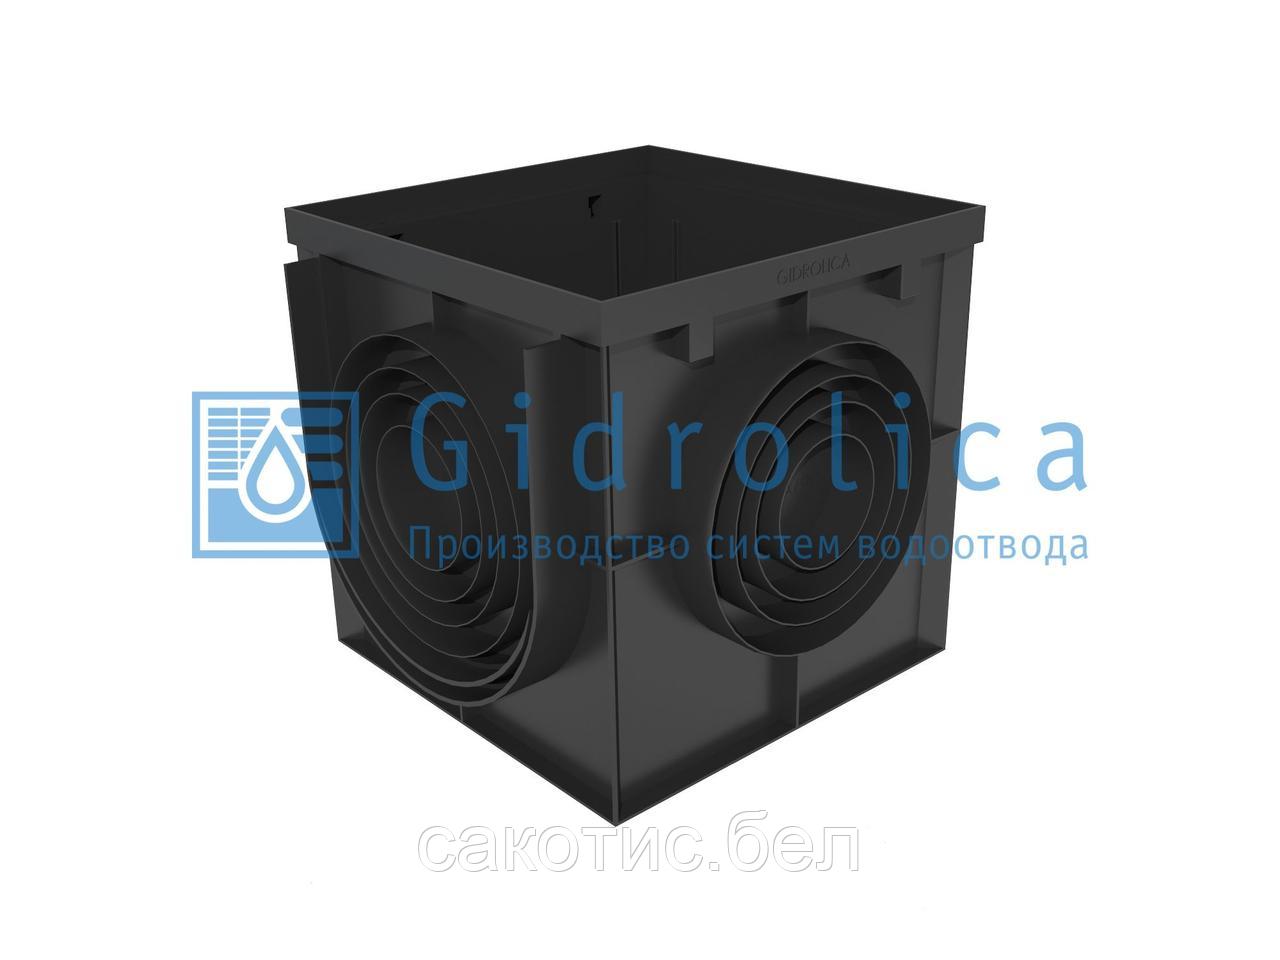 Дождеприемник Gidrolica Point ДП-40.40 - пластиковый с пластиковой решеткой